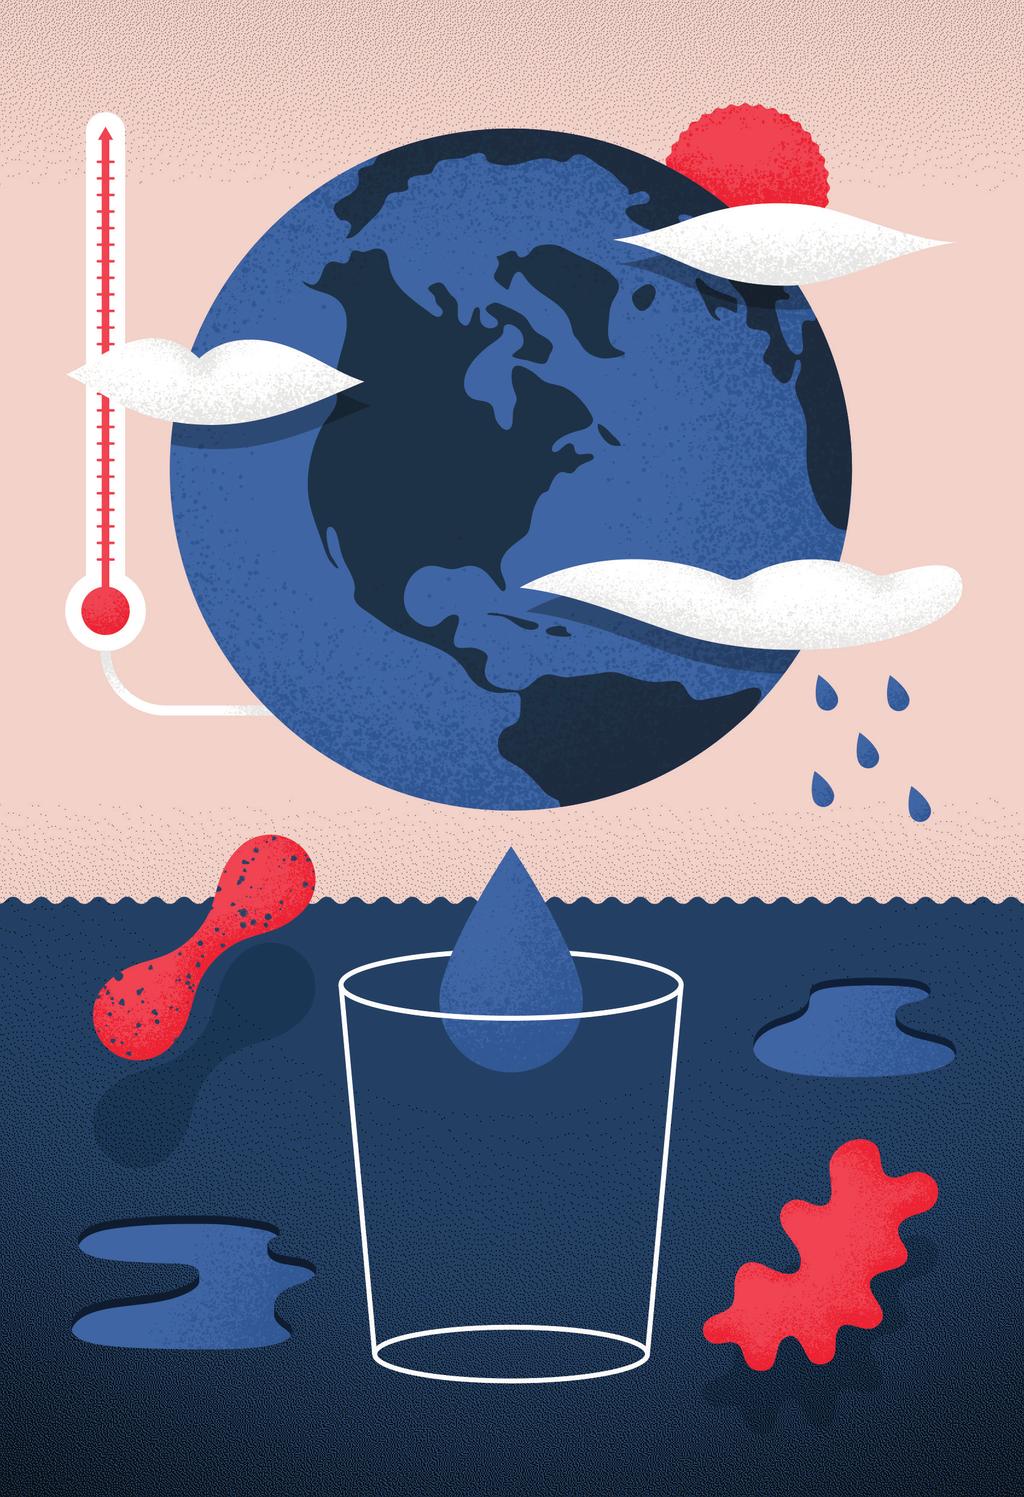 Vad händer om vattnet tar slut? Vad menas med Klimatförändring Förändringar i jordens medeltemperatur och vädertrender över lång tid, i synnerhet den temperaturstegring som kallas global uppvärmning.